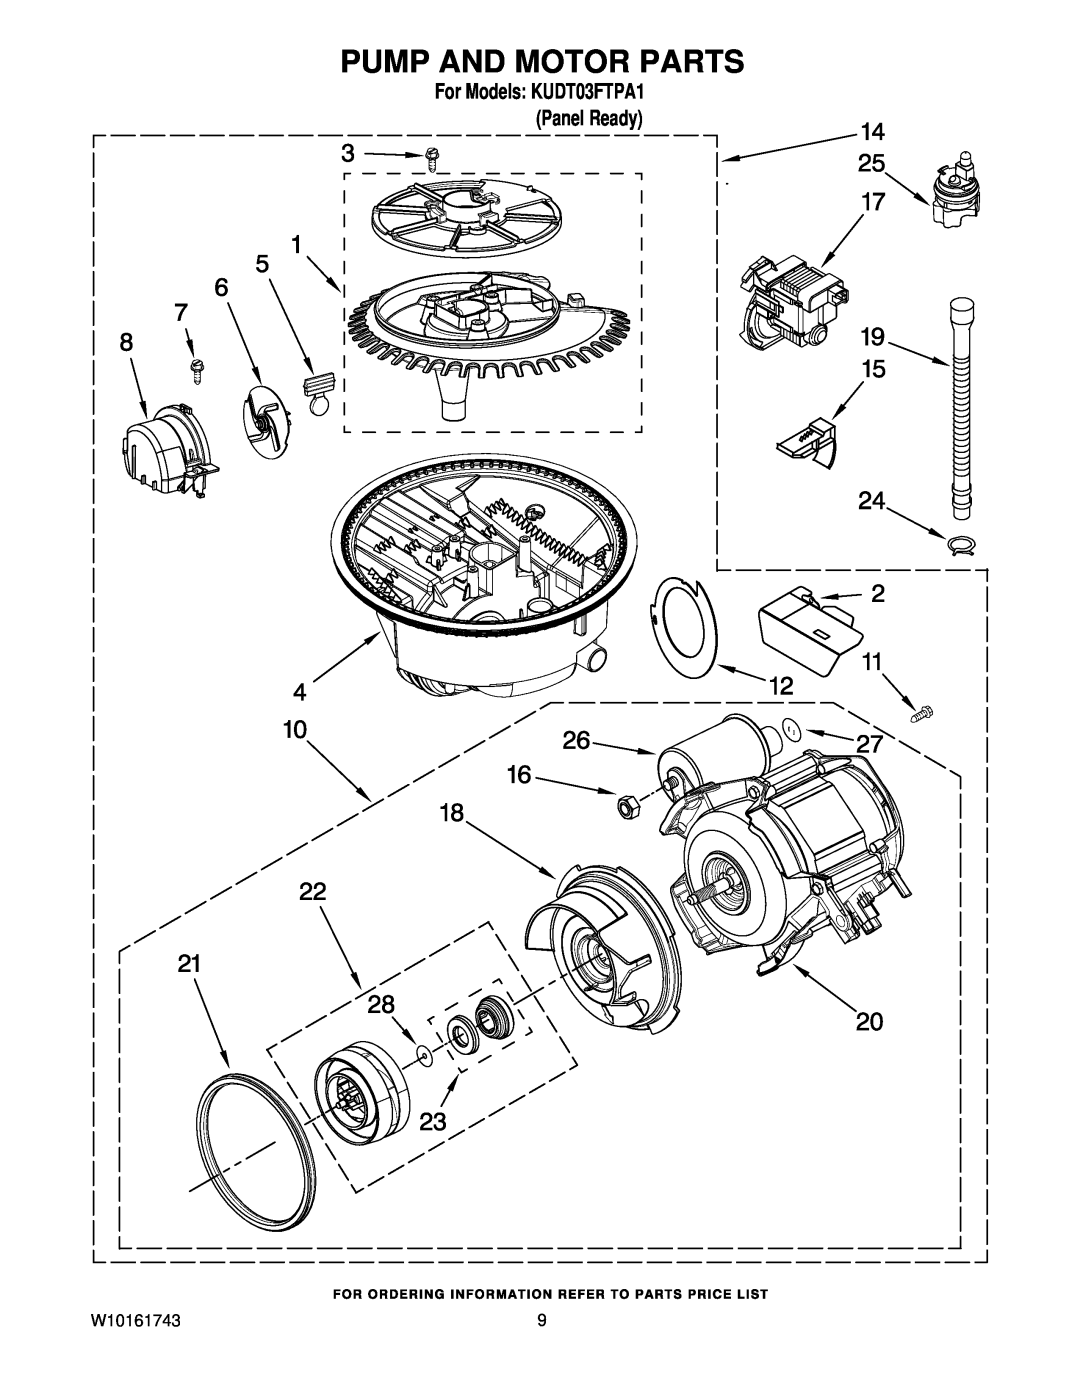 KitchenAid manual Pump And Motor Parts, For Models KUDT03FTPA1 Panel Ready 